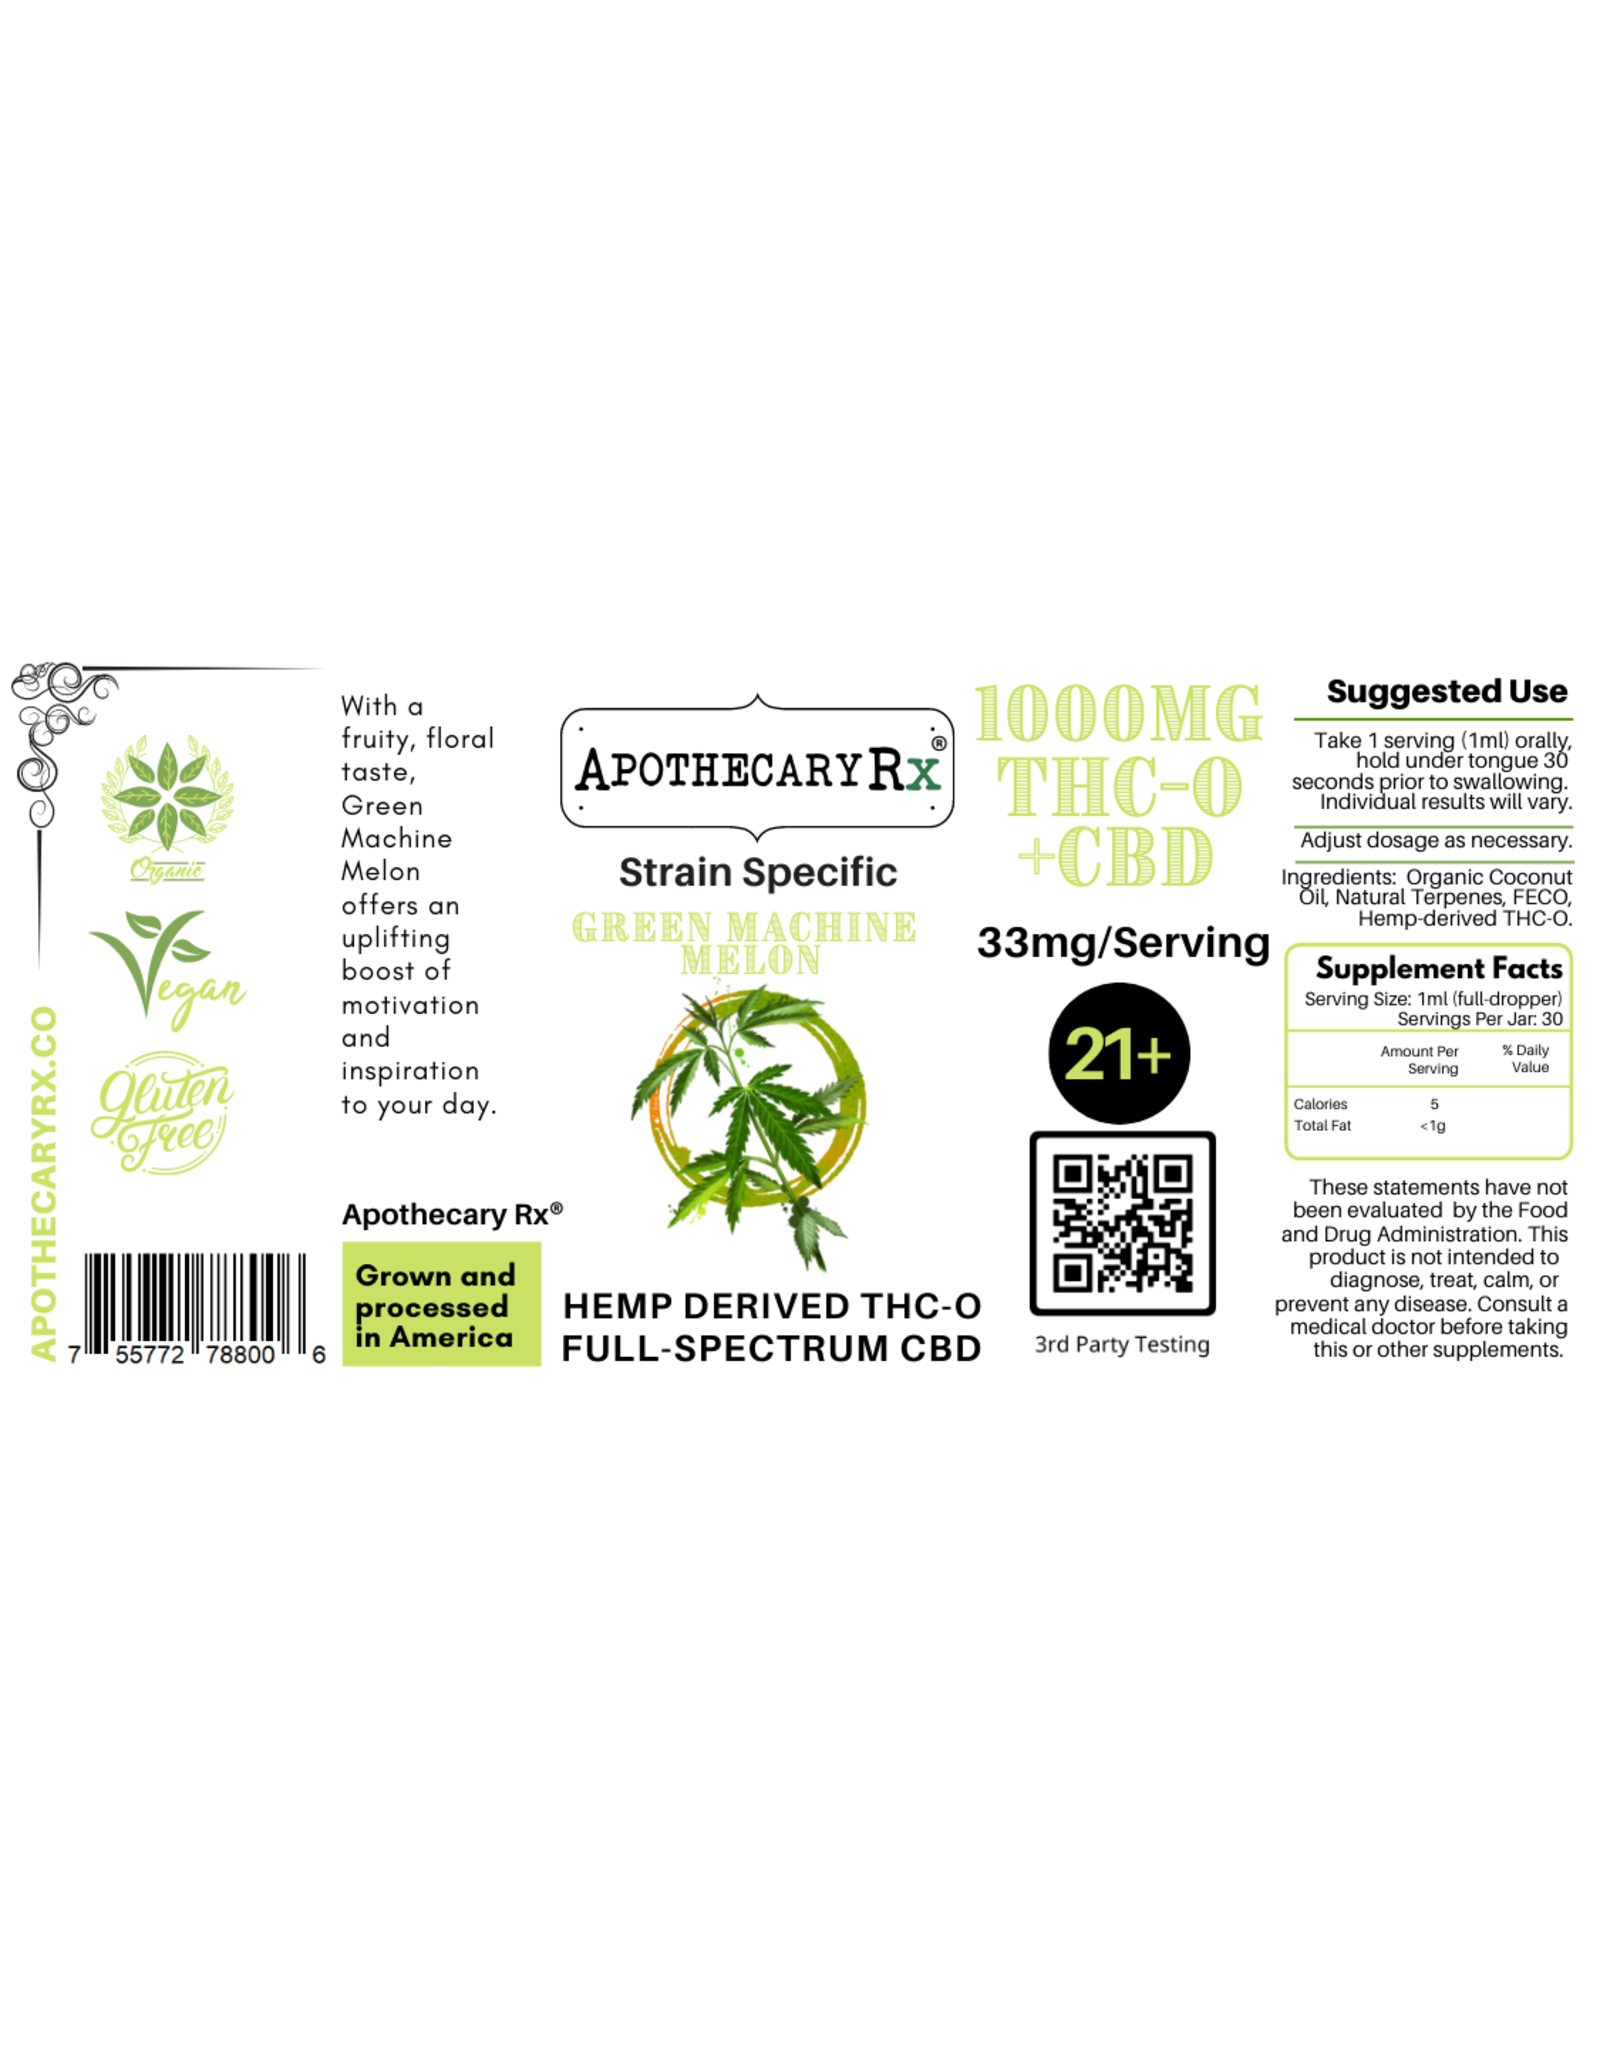 Apothecary Rx Apothecary Rx THCO/CBD Green Machine Melon Sativa Elixir 1000mg 30ml